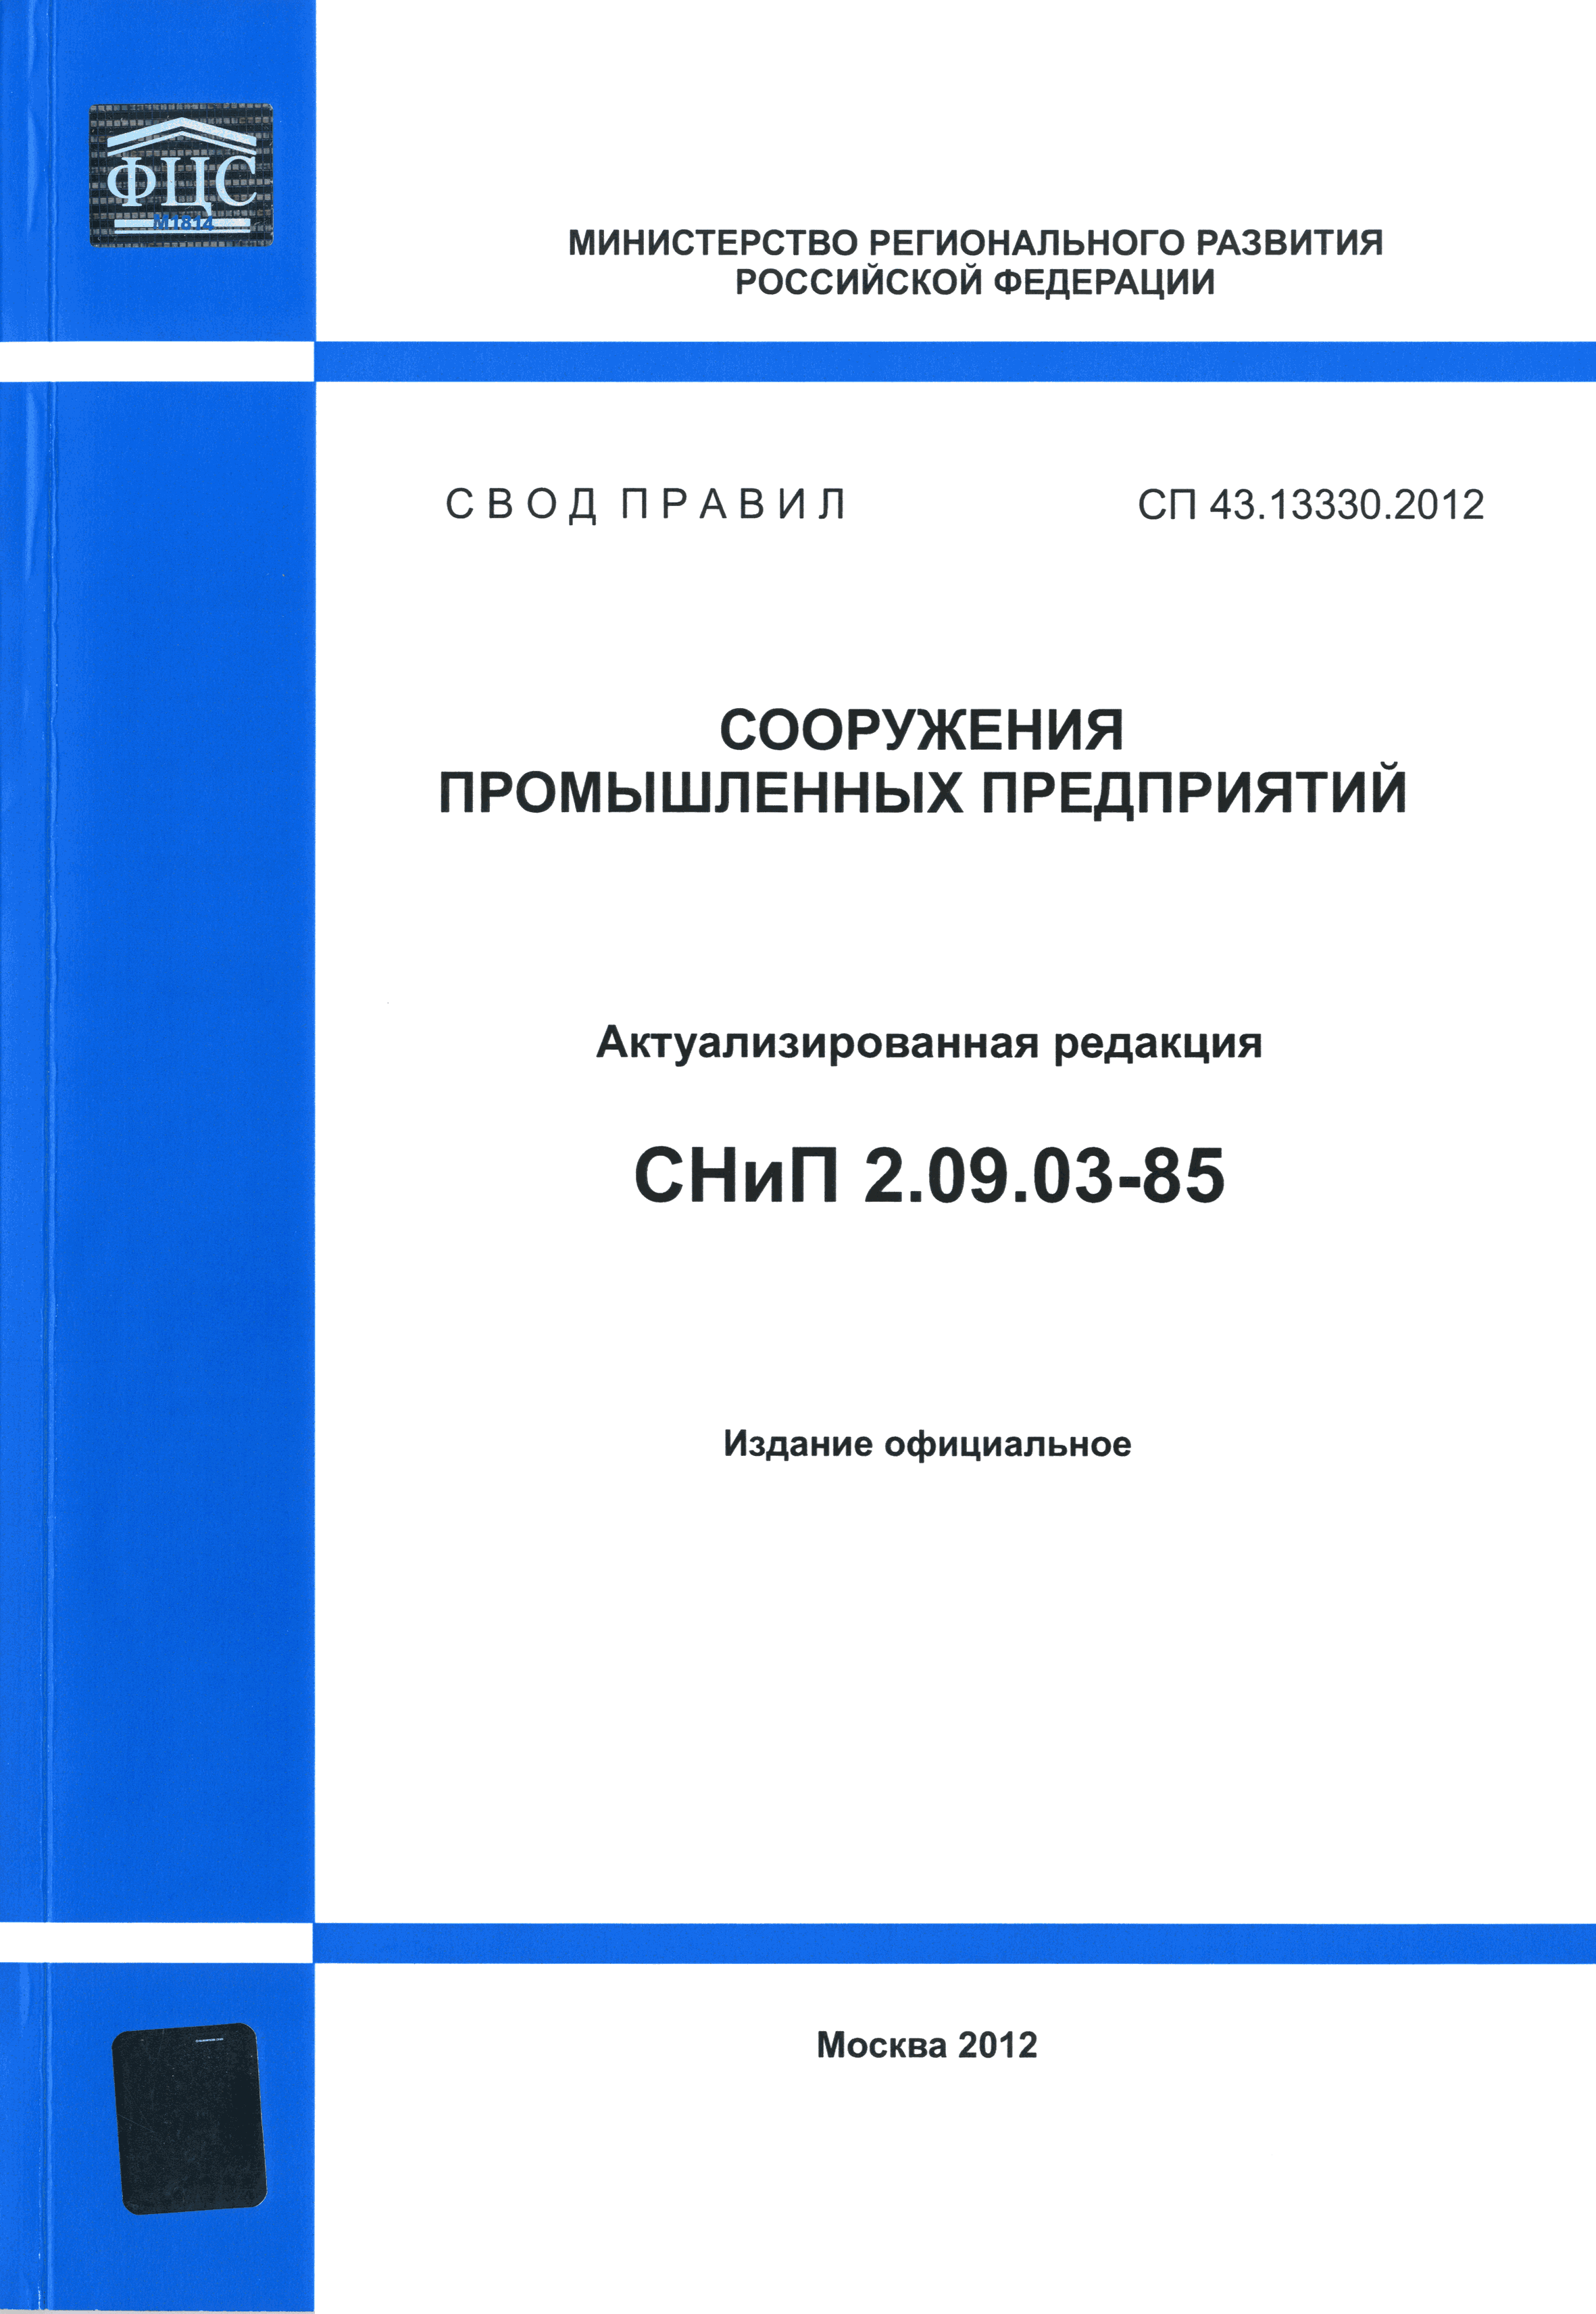 СП 43.13330.2012